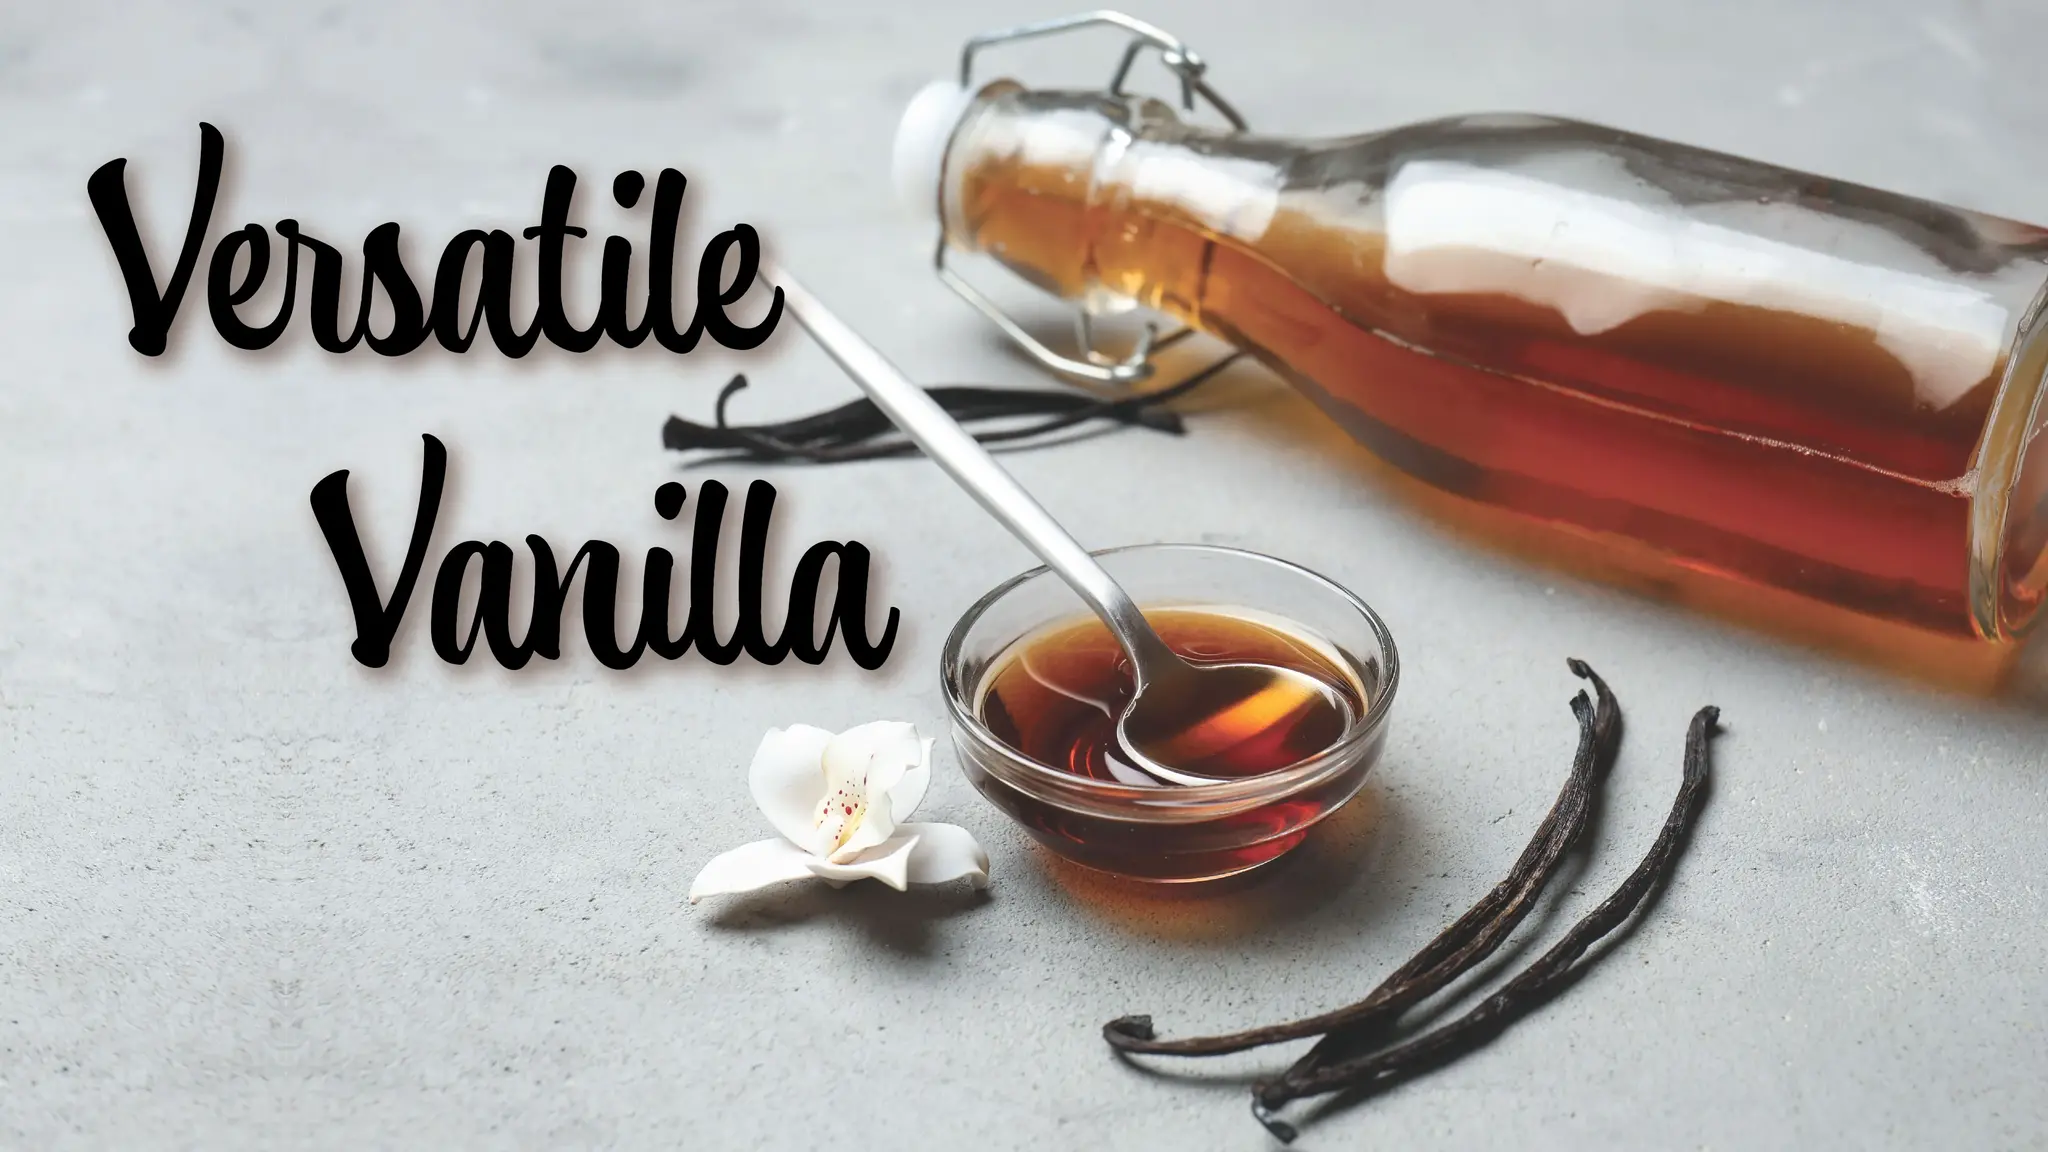 Versatile Vanilla